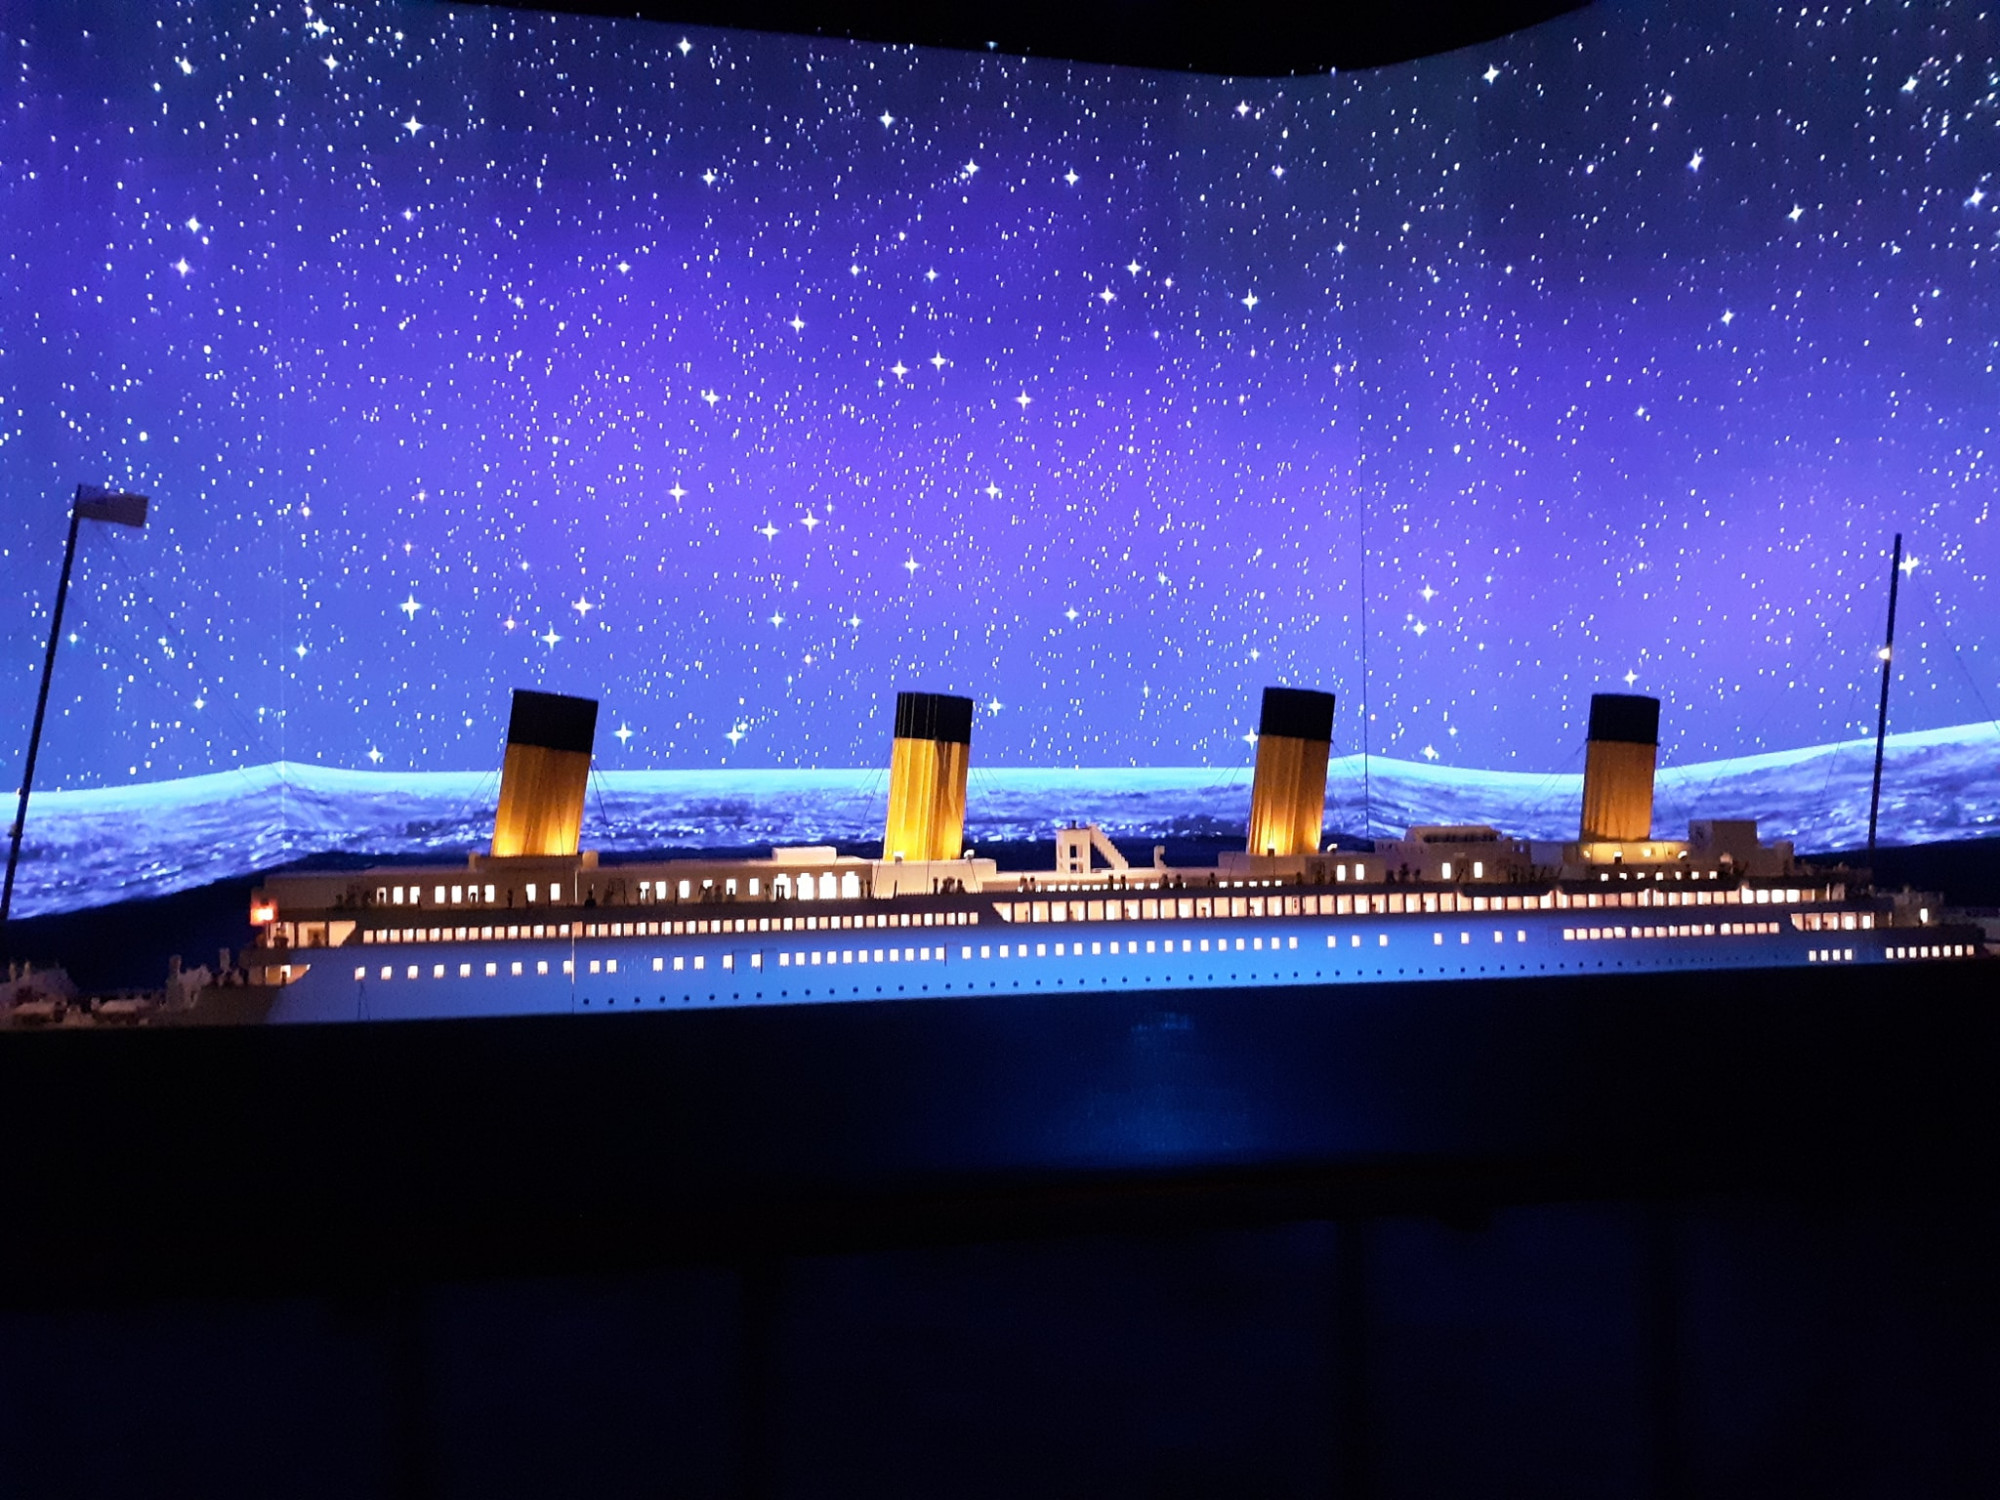 Ce garçon autiste a construit la plus grande réplique du Titanic en Lego